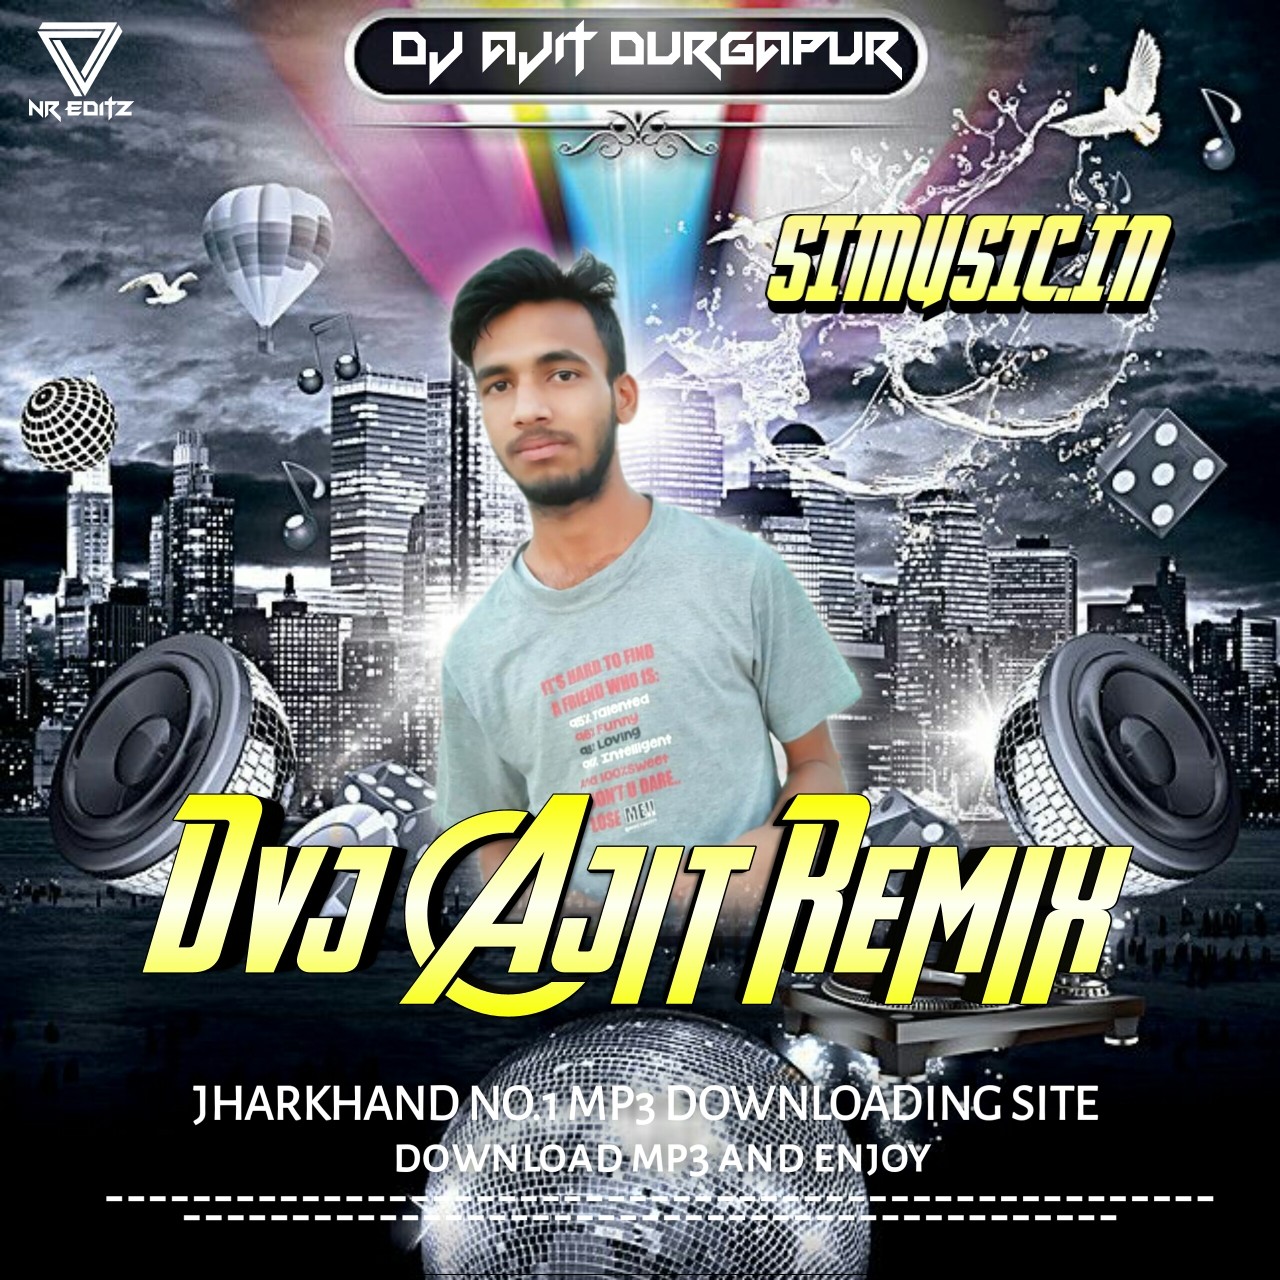 Dj Ajit Panagarh [Durgapur] Hindi Remix Songs